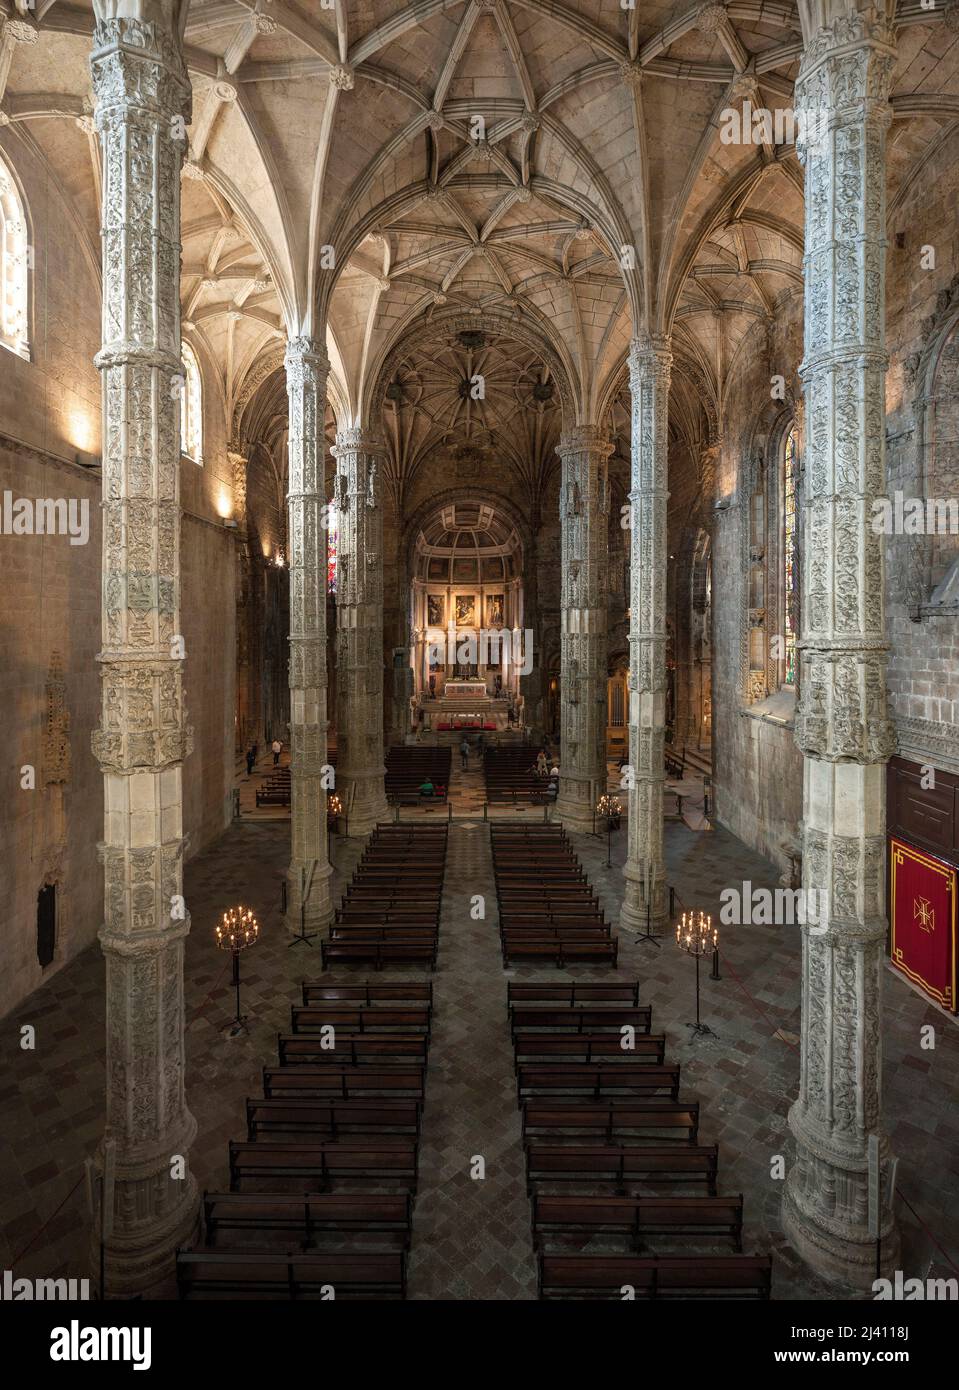 NEF centrale de l’eglise Sainte Marie des Hieronymites, situee dans le quartier de Belem a Lisbonne, Inizializzazione dell’abbatiale du monastere des Hieronymites (Mosteiro dos Jeronimos), dont le chantier de l’ensemble monumental voulu par le roi Manuel 1er du Portugal (1469-1521) debute en 1502, l’eglise devenue paroissiale en 1834 et l’ensemble est inscritto sur la liste du patrimoine mondial de l’Unesco en 1983, la voute et les piliers sont conconco par Joao de Castilho (vers 1470-vers 1552), Architecture religieuse de style manuelin dont les Inspirations sont les Arts roman, gothique et mauresque. Foto Stock